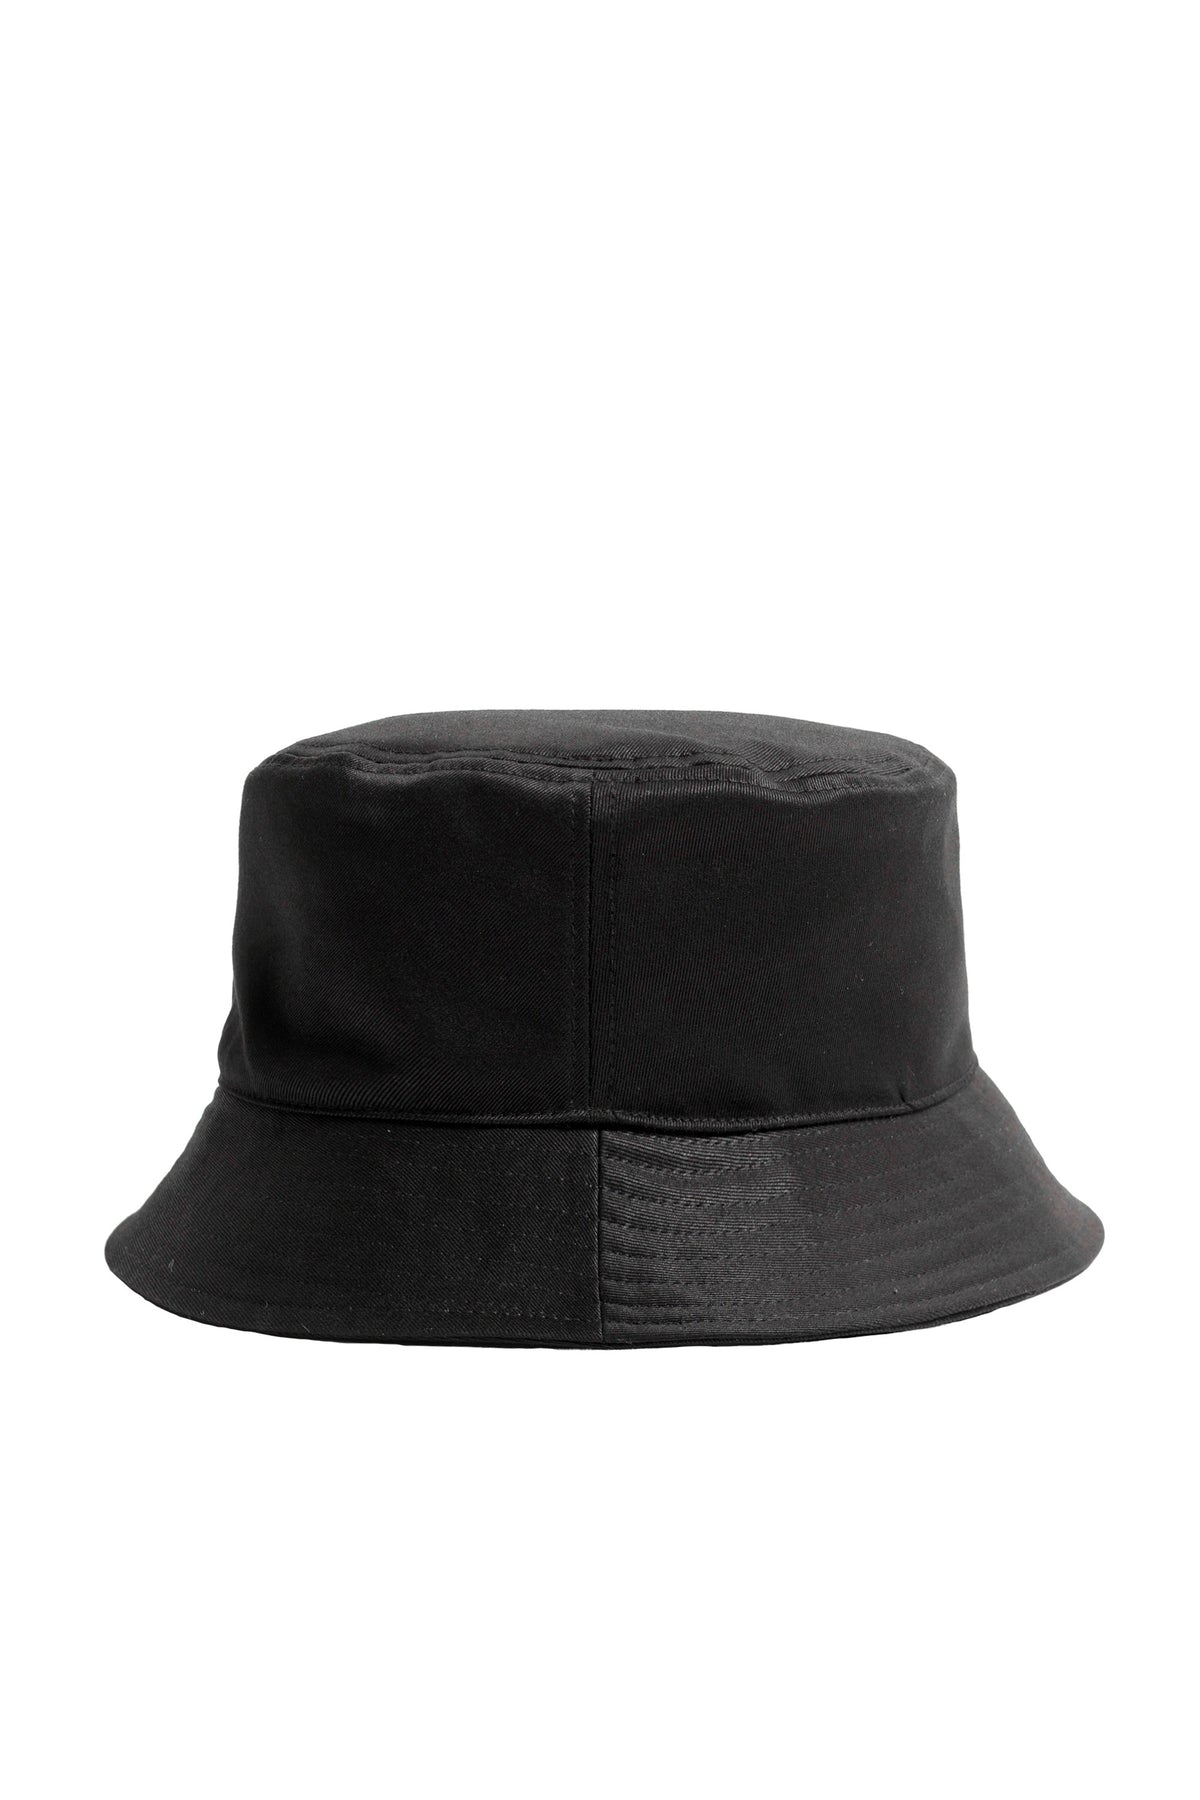 BUCKET HAT (EXCLUSIVE) / BLK